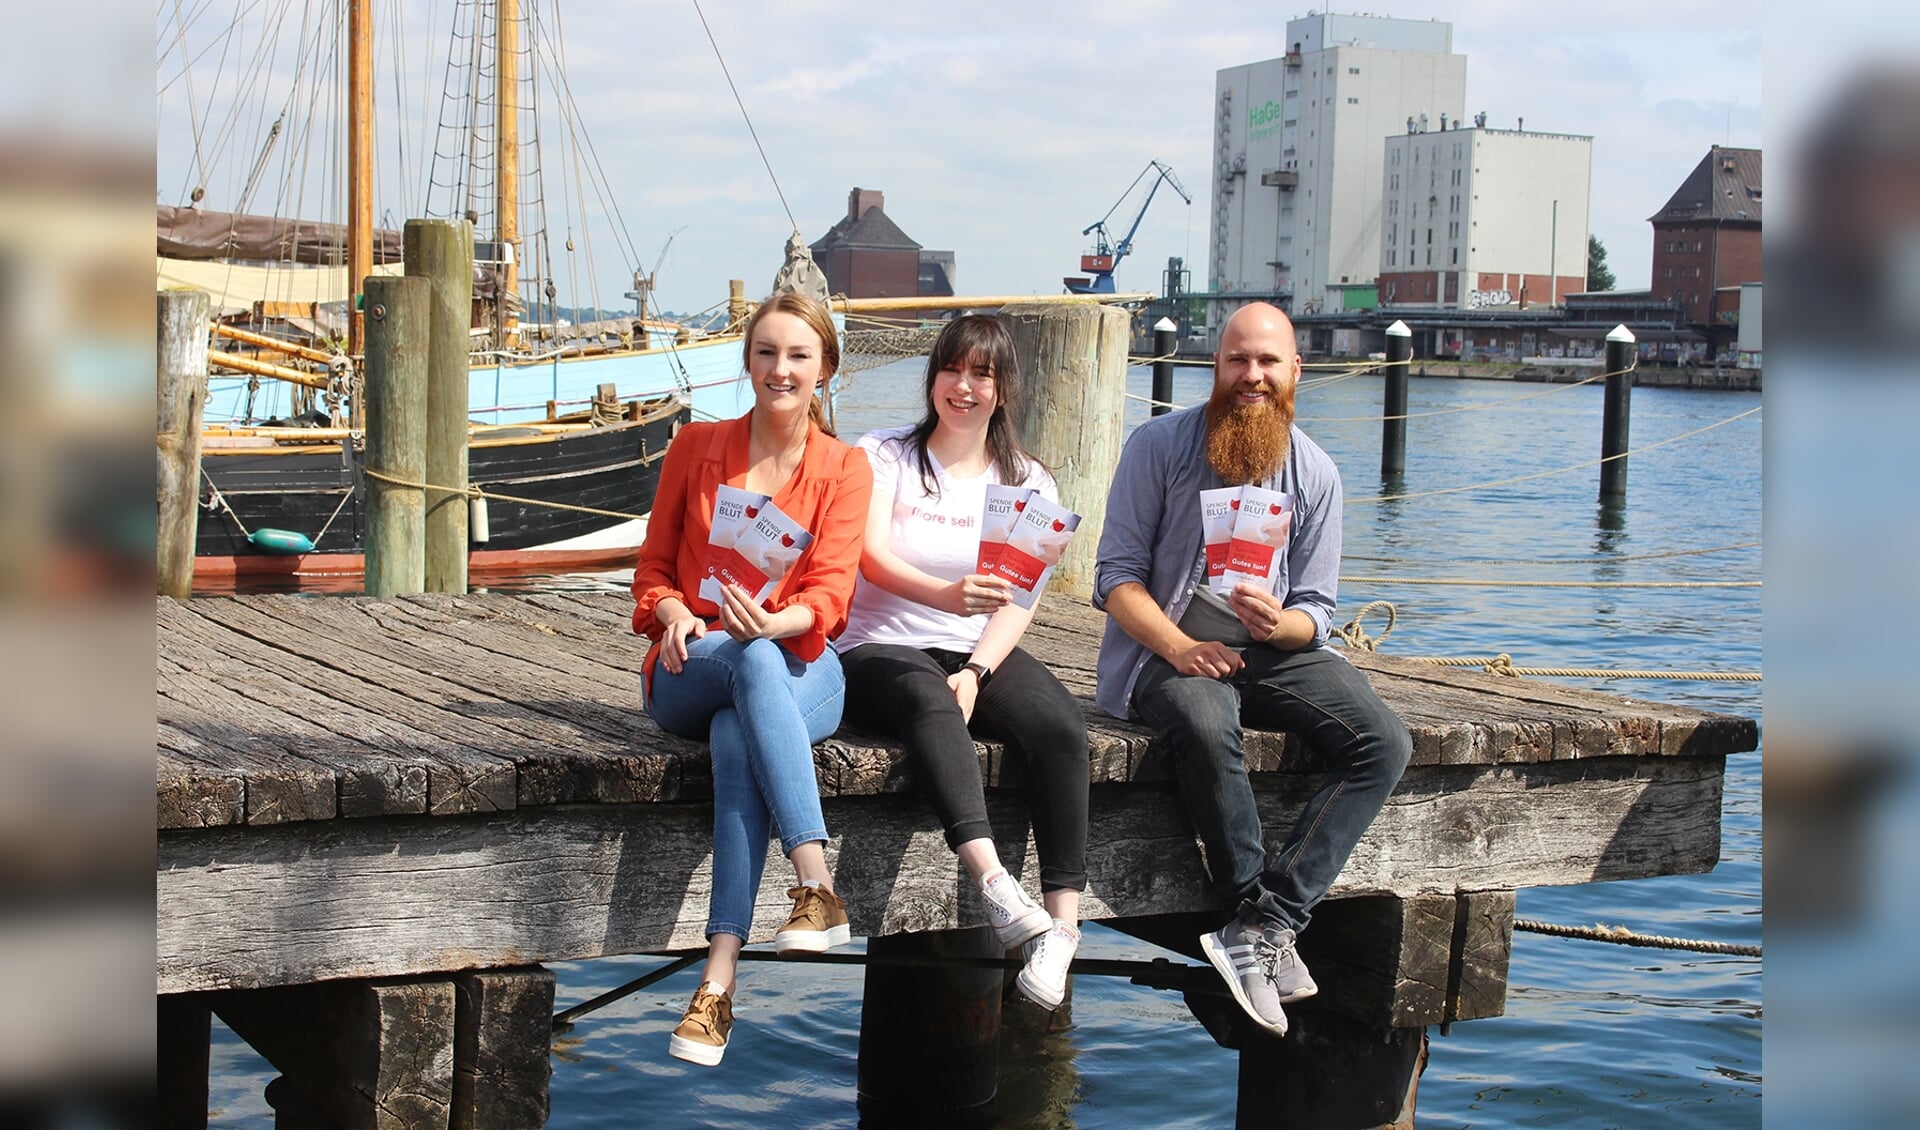 Rotaract Club Flensborg er en af samarbejdsorganisationerne i kampagnen, der henover sommeren håber at nå mange nye bloddonorer. Fra venstre mod højre ses Marleen Laville, Ewa Halse og Jens Harzmann, alle medlemmer af Rotaract Club Flensborg.